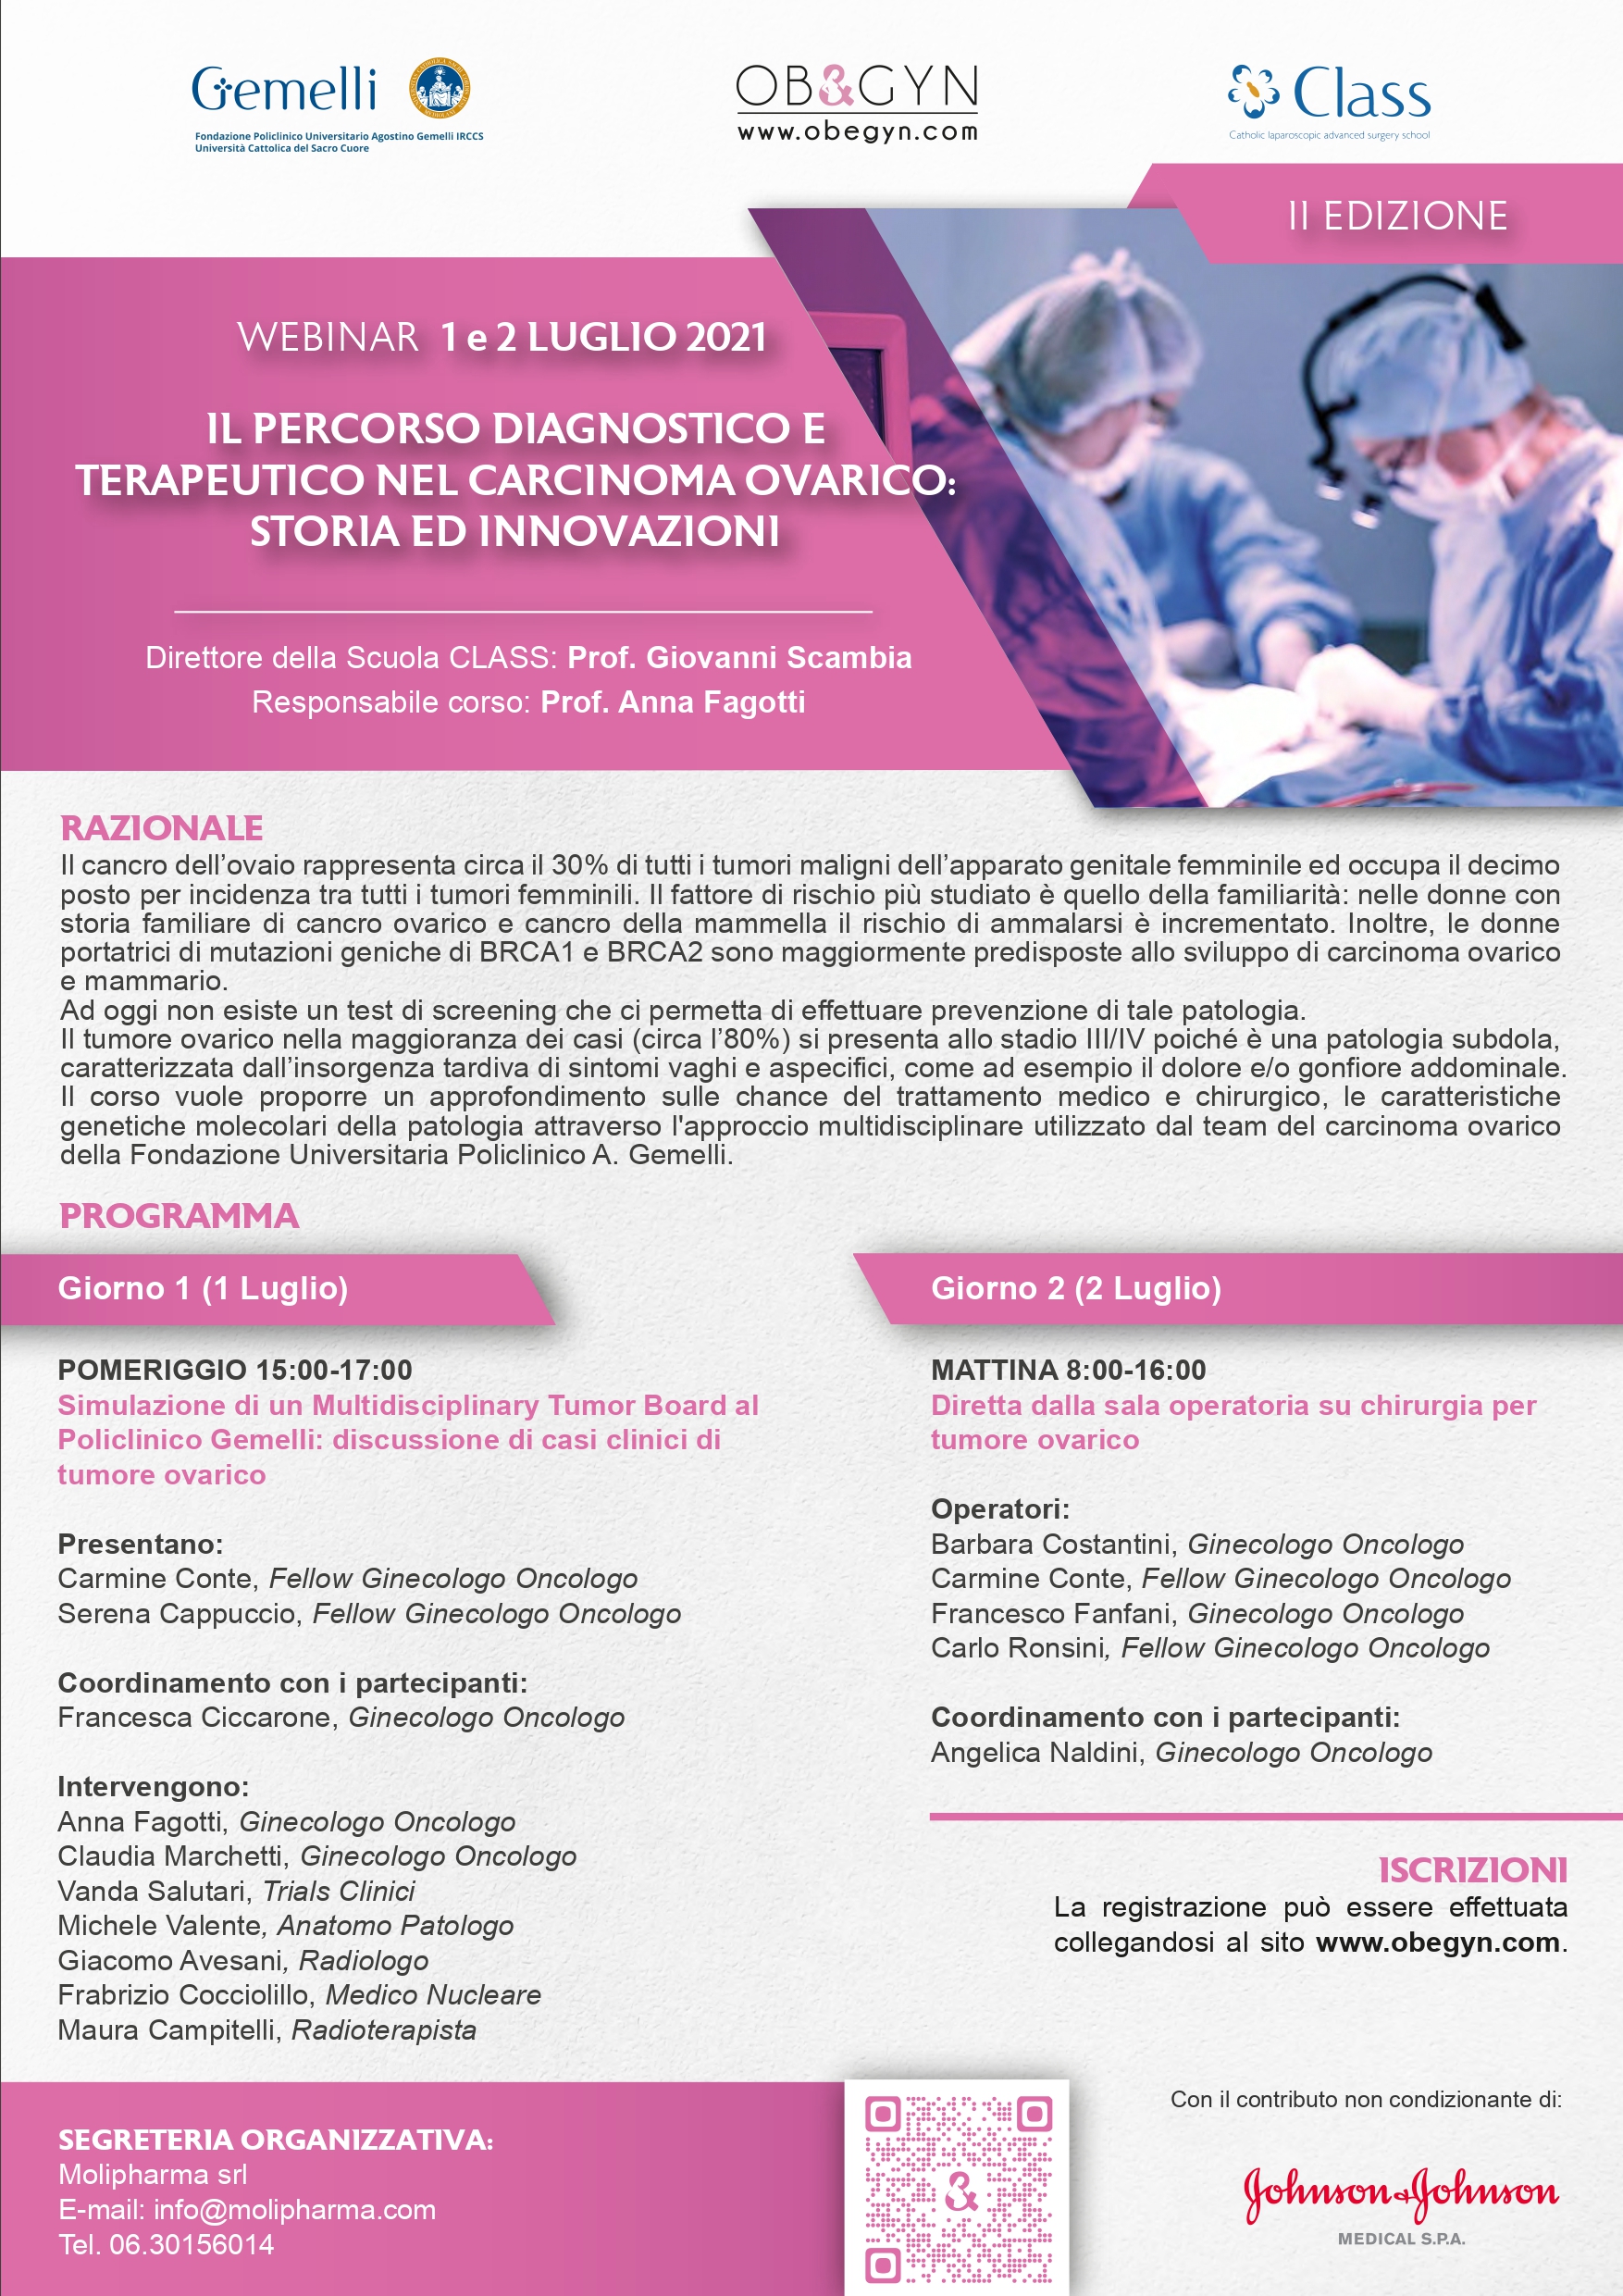 Programma Webinar- Il percorso diagnostico terapeutico del carcinoma ovarico: storia ed innovazioni - II Edizione